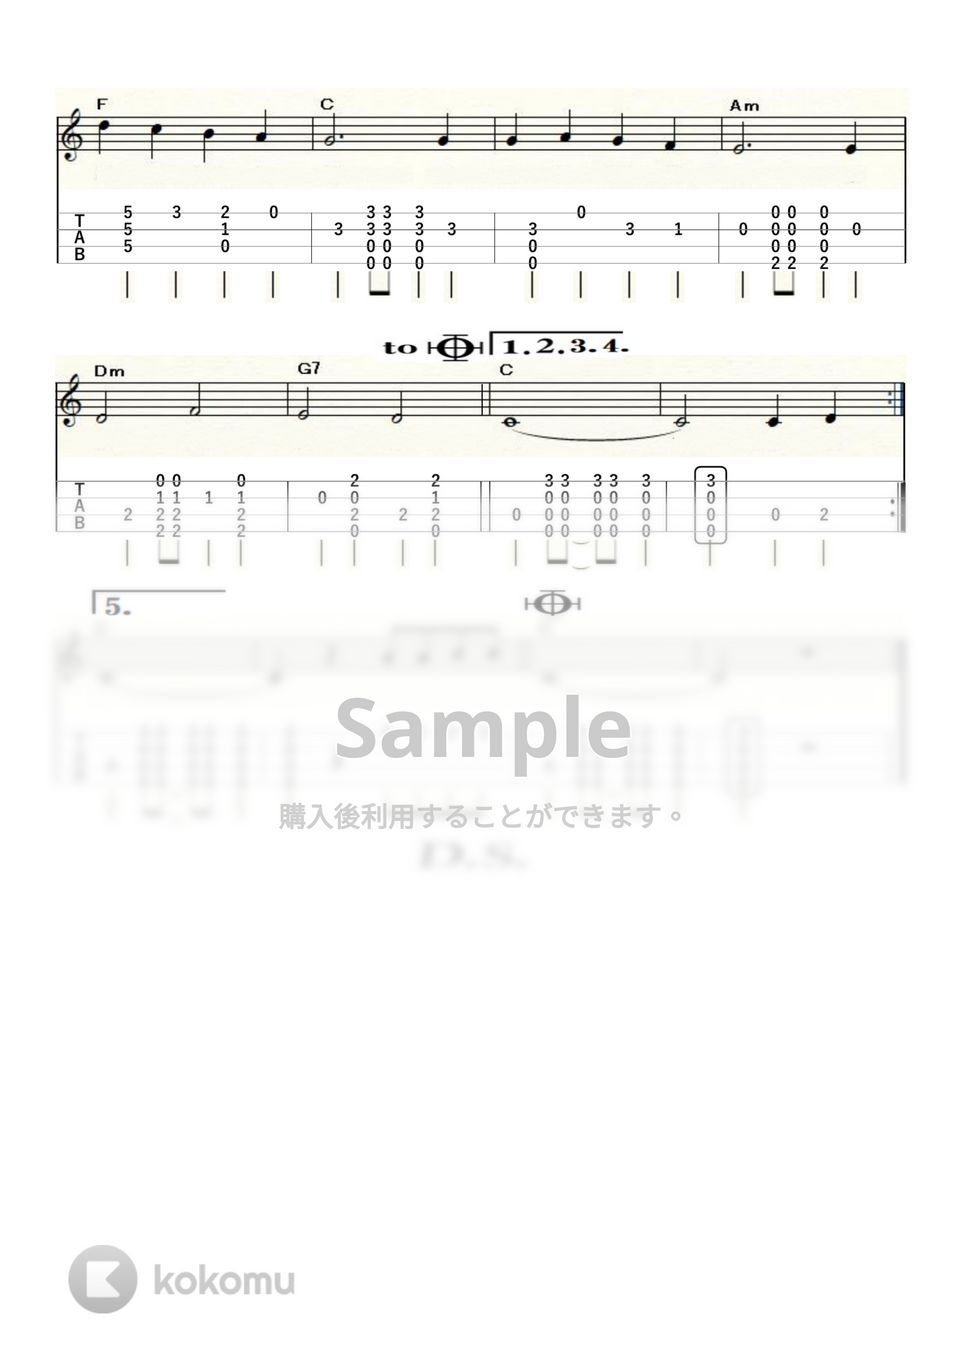 本田路津子 - 一人の手 (ｳｸﾚﾚｿﾛ / High-G・Low-G / 中級) by ukulelepapa